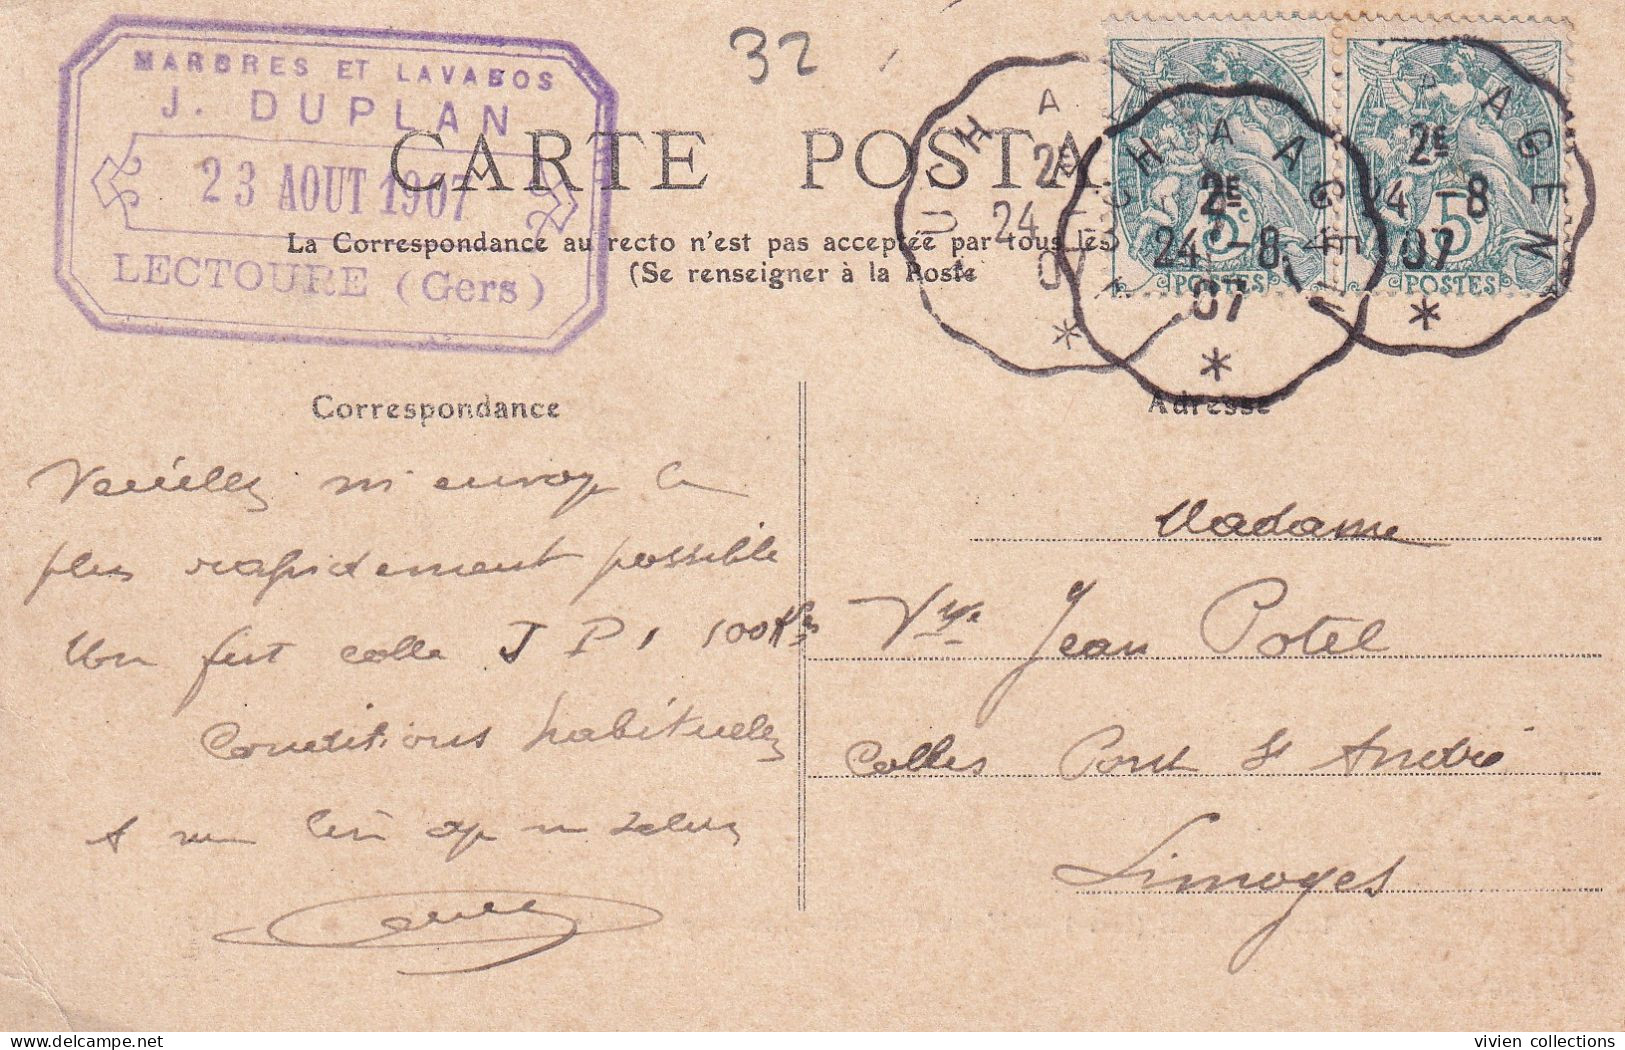 Lectoure (32 Gers) Usine Duplan Carte Commerciale Tampon Au Dos Marbres Et Lavabos Circulée 1907 Convoyeur Auch à Agen - Lectoure